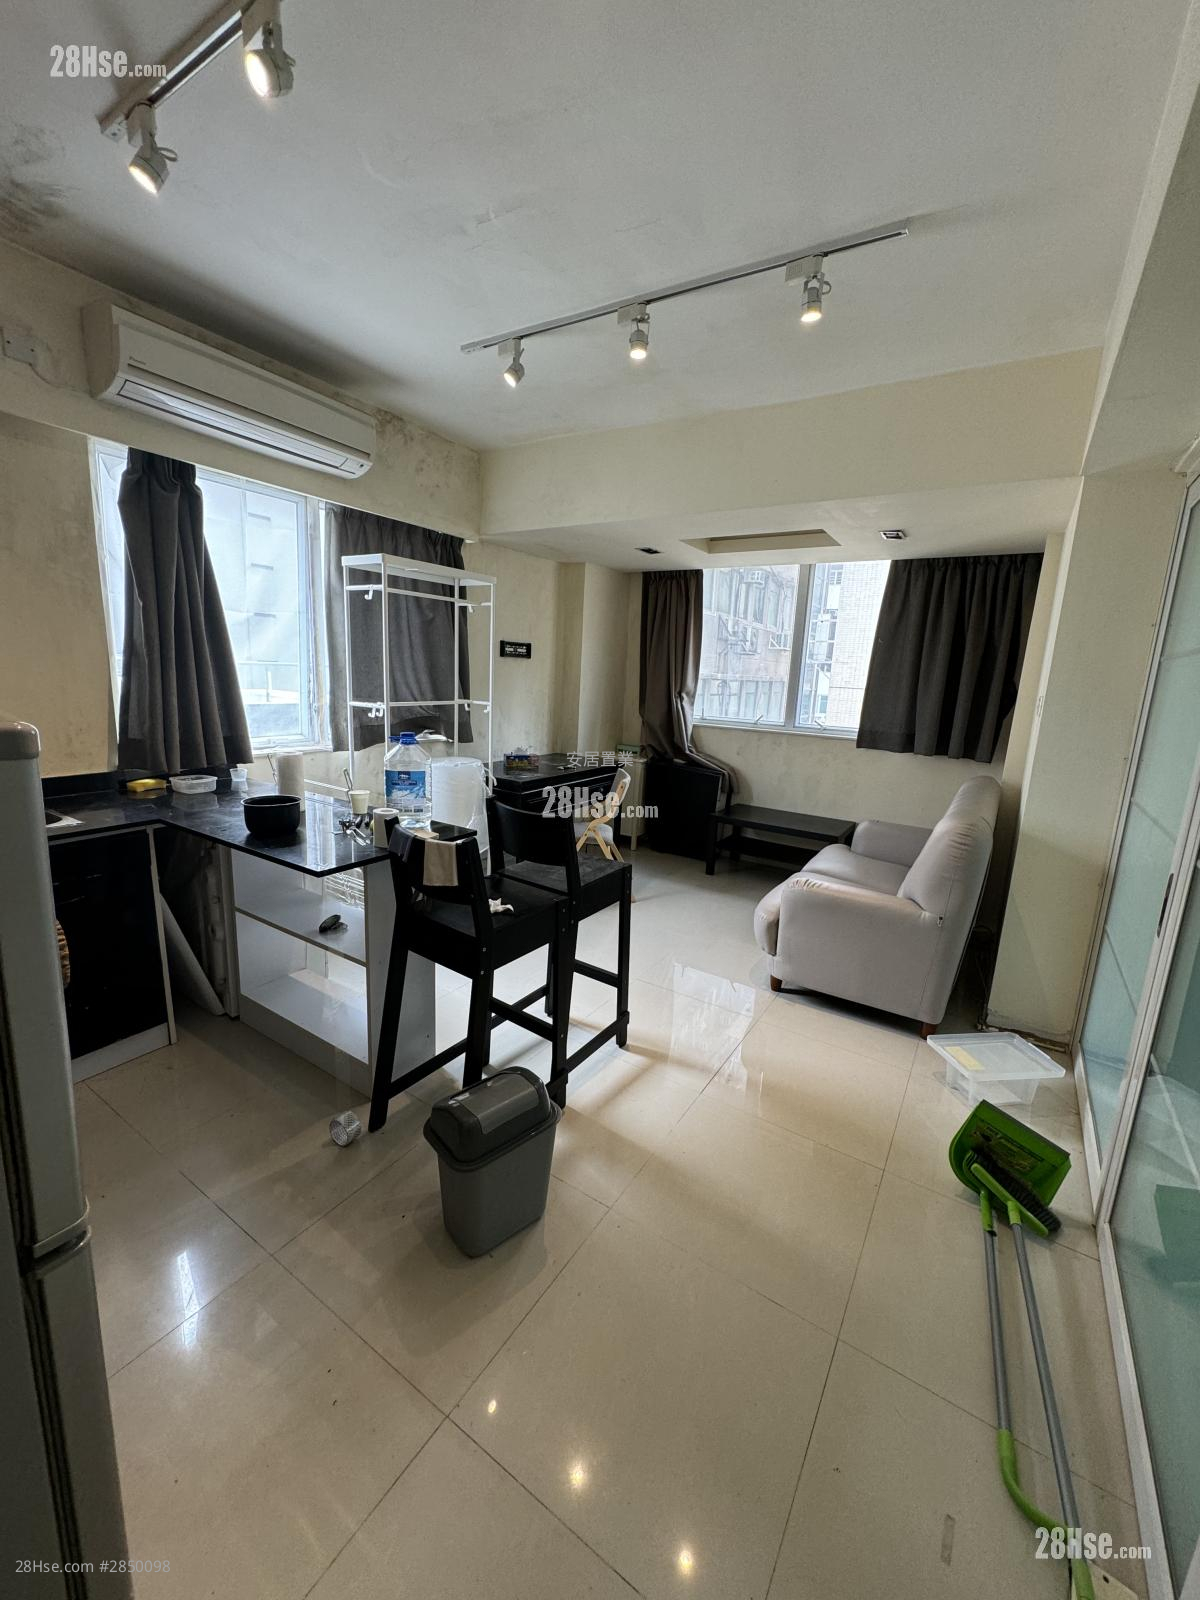 Yiu Kei Mansion Rental 1 bedrooms , 1 bathrooms 300 ft²